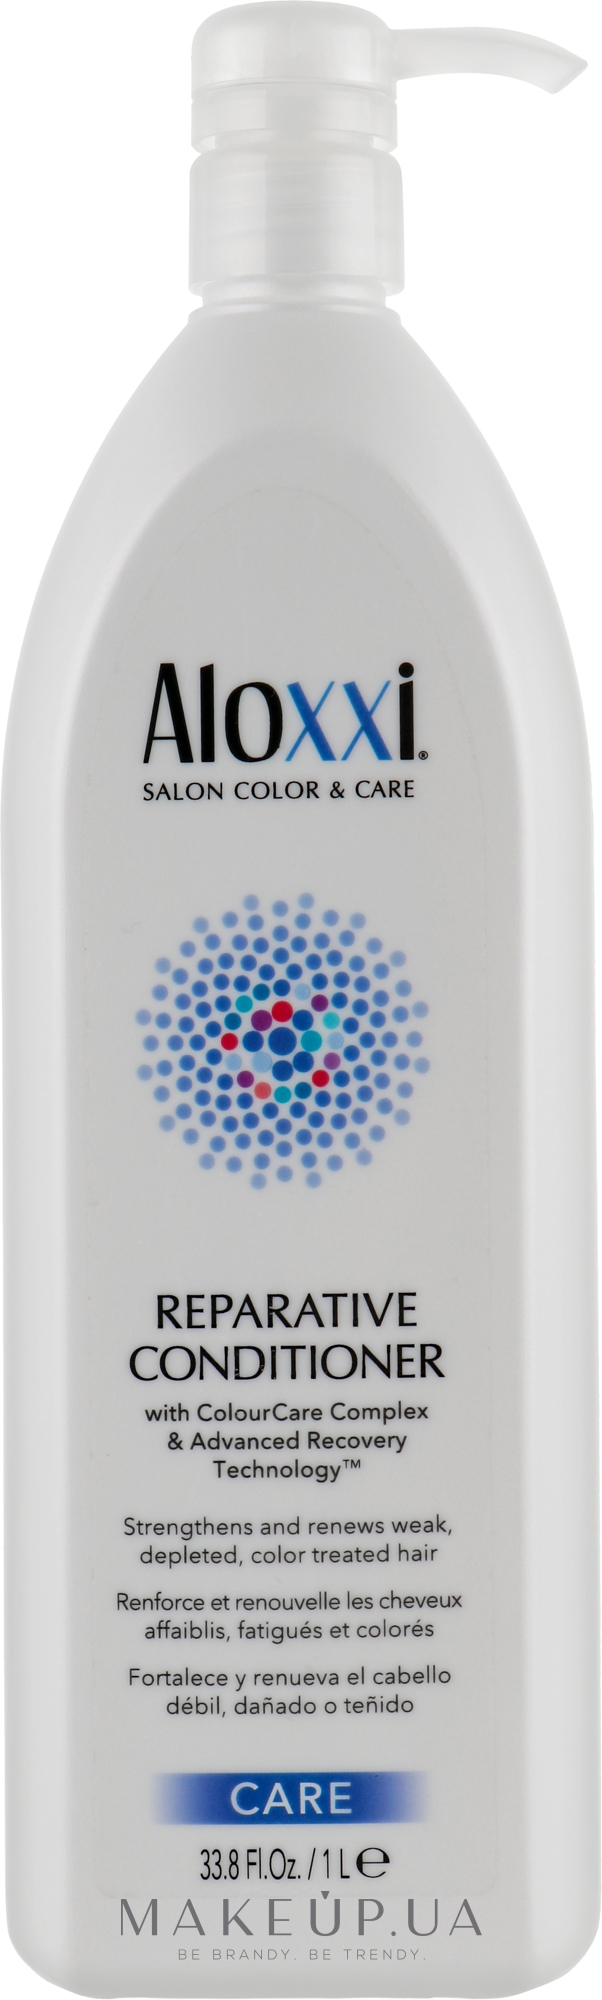 Восстанавливащий кондиционер для волос - Aloxxi Reparative Conditioner — фото 1000ml